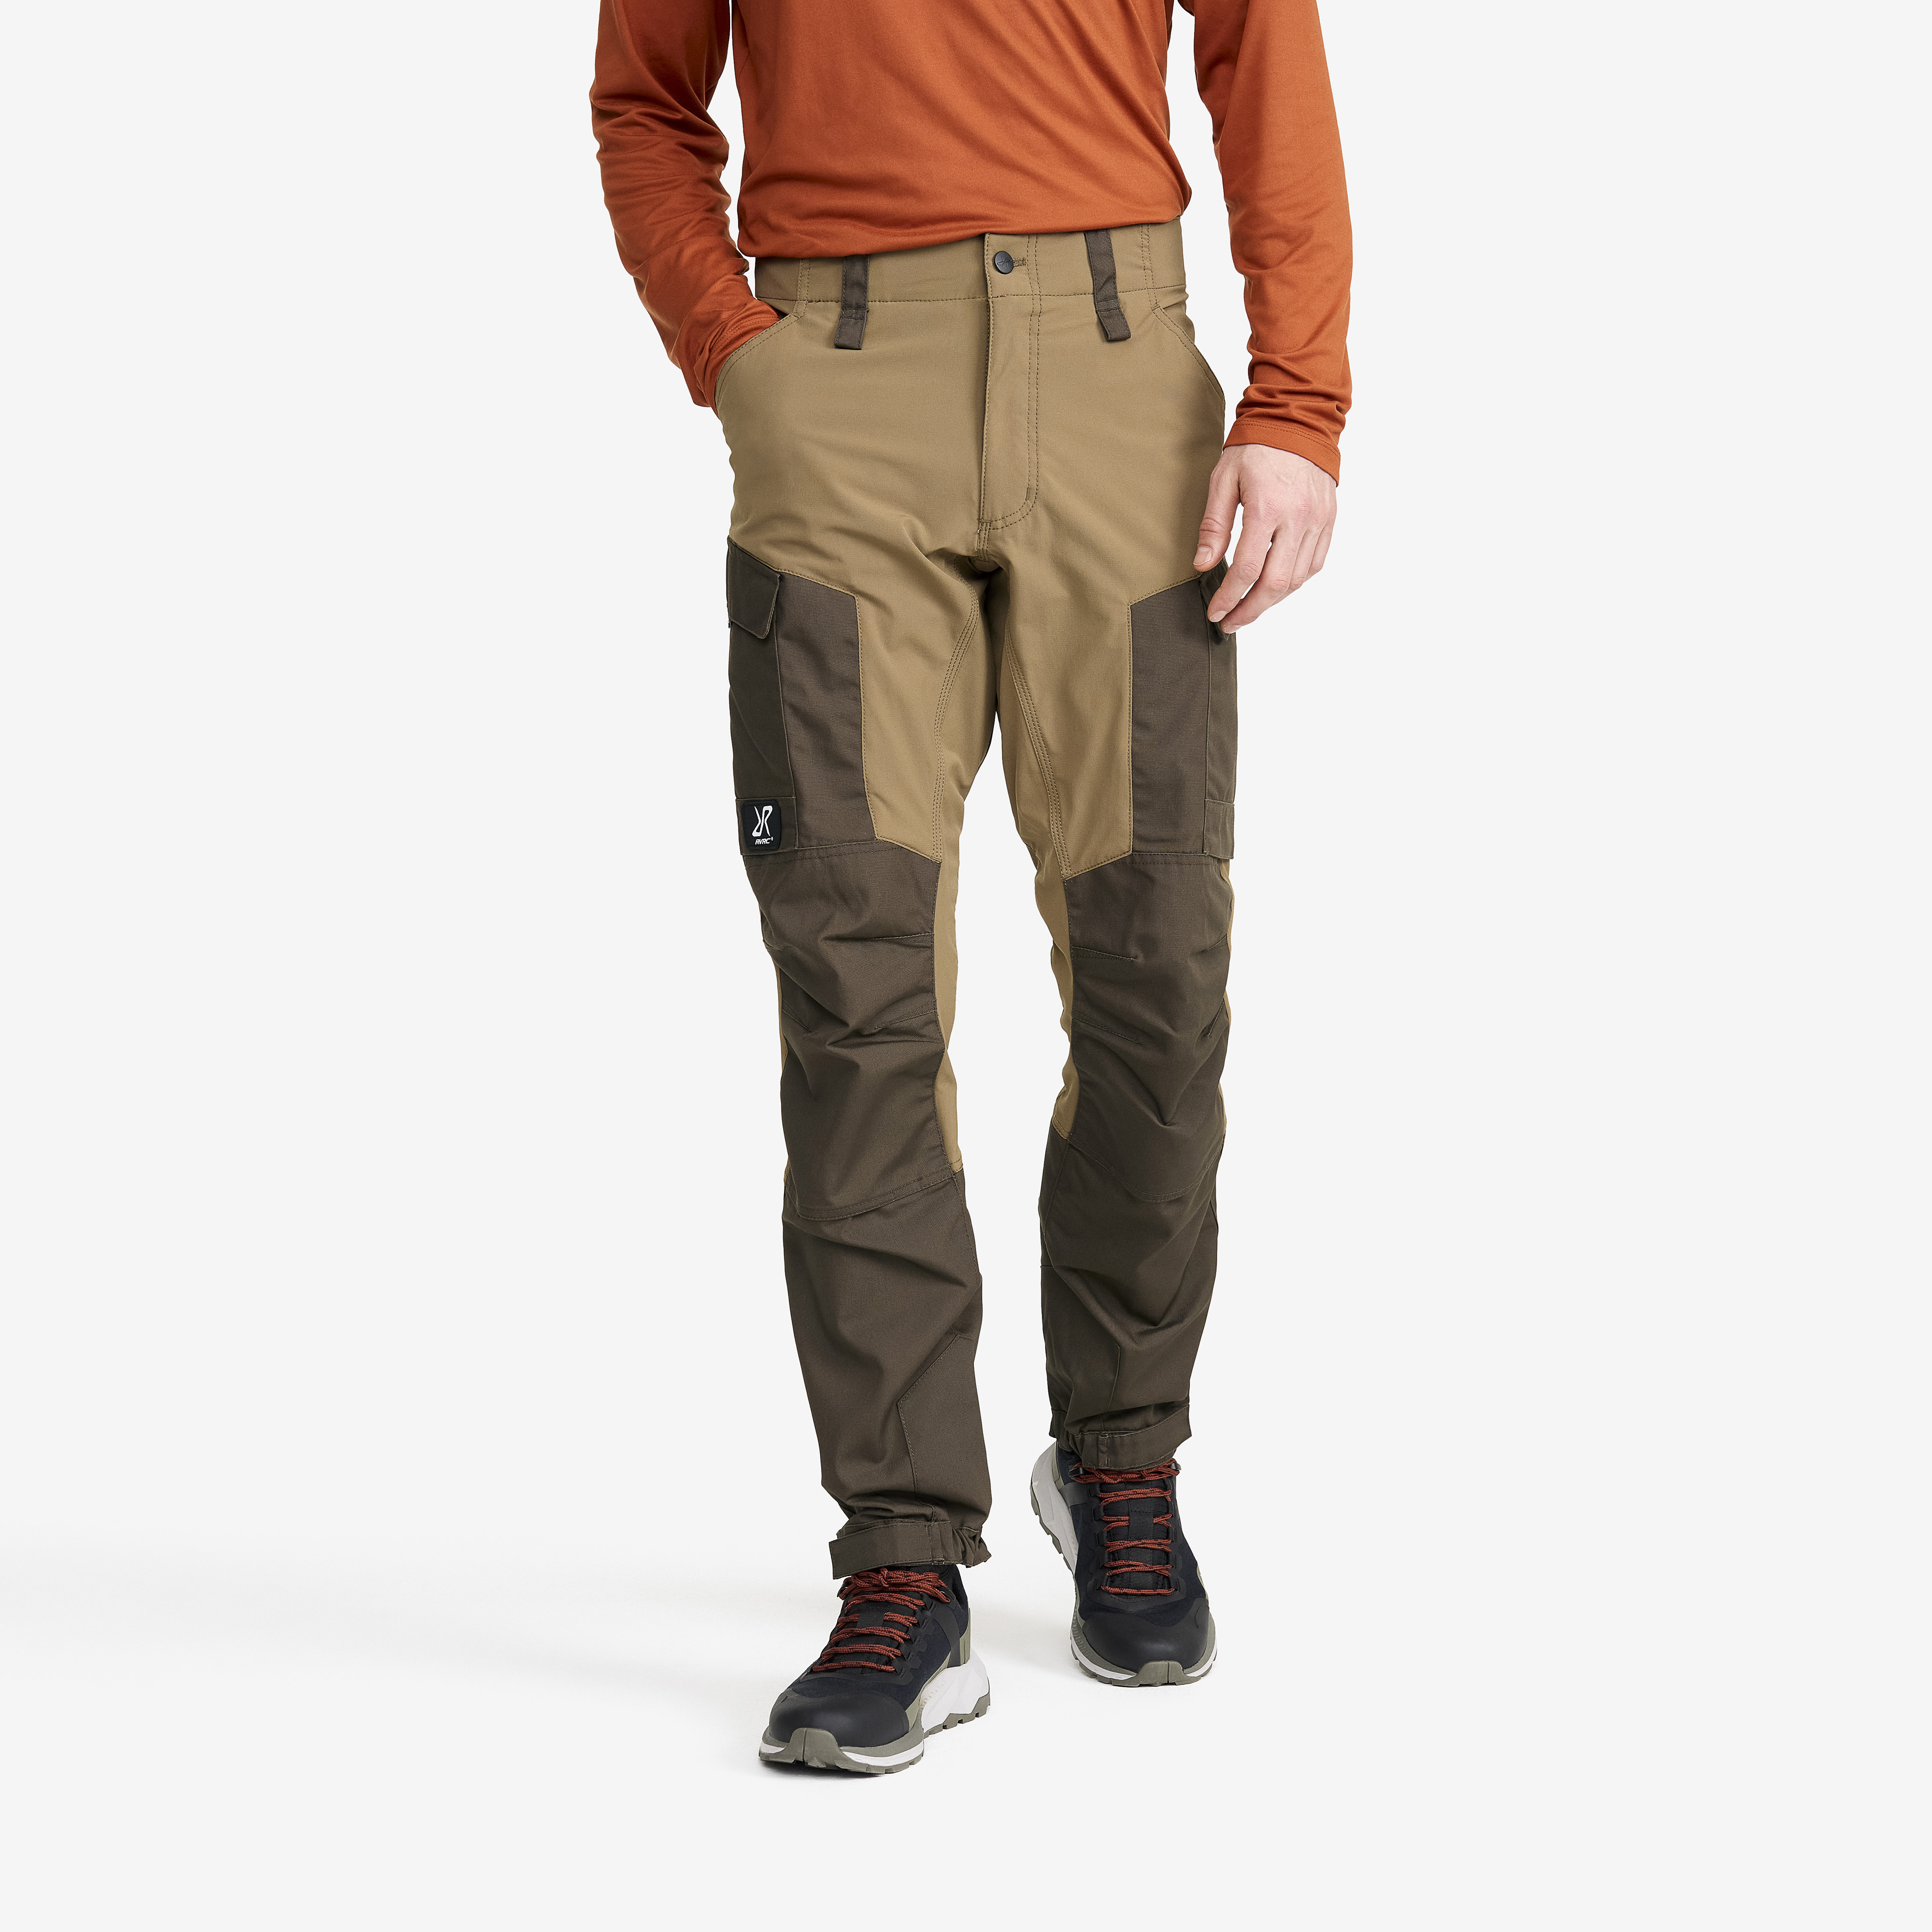 RVRC GP outdoor pants for men in brown